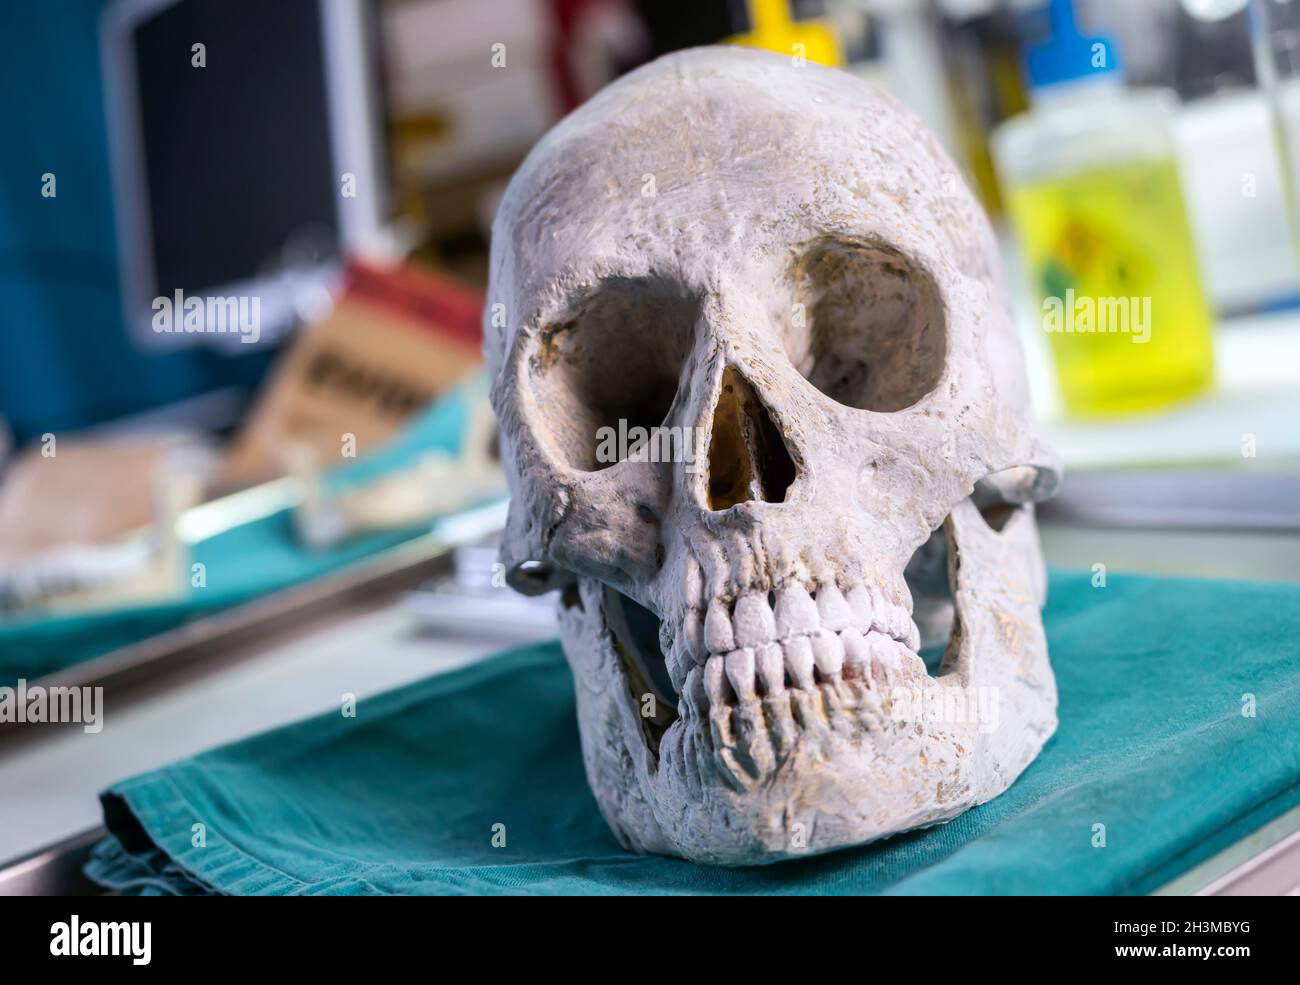 Crâne personne adulte dans l'enquête de meurtre dans un laboratoire judiciaire, image conceptuelle Banque D'Images